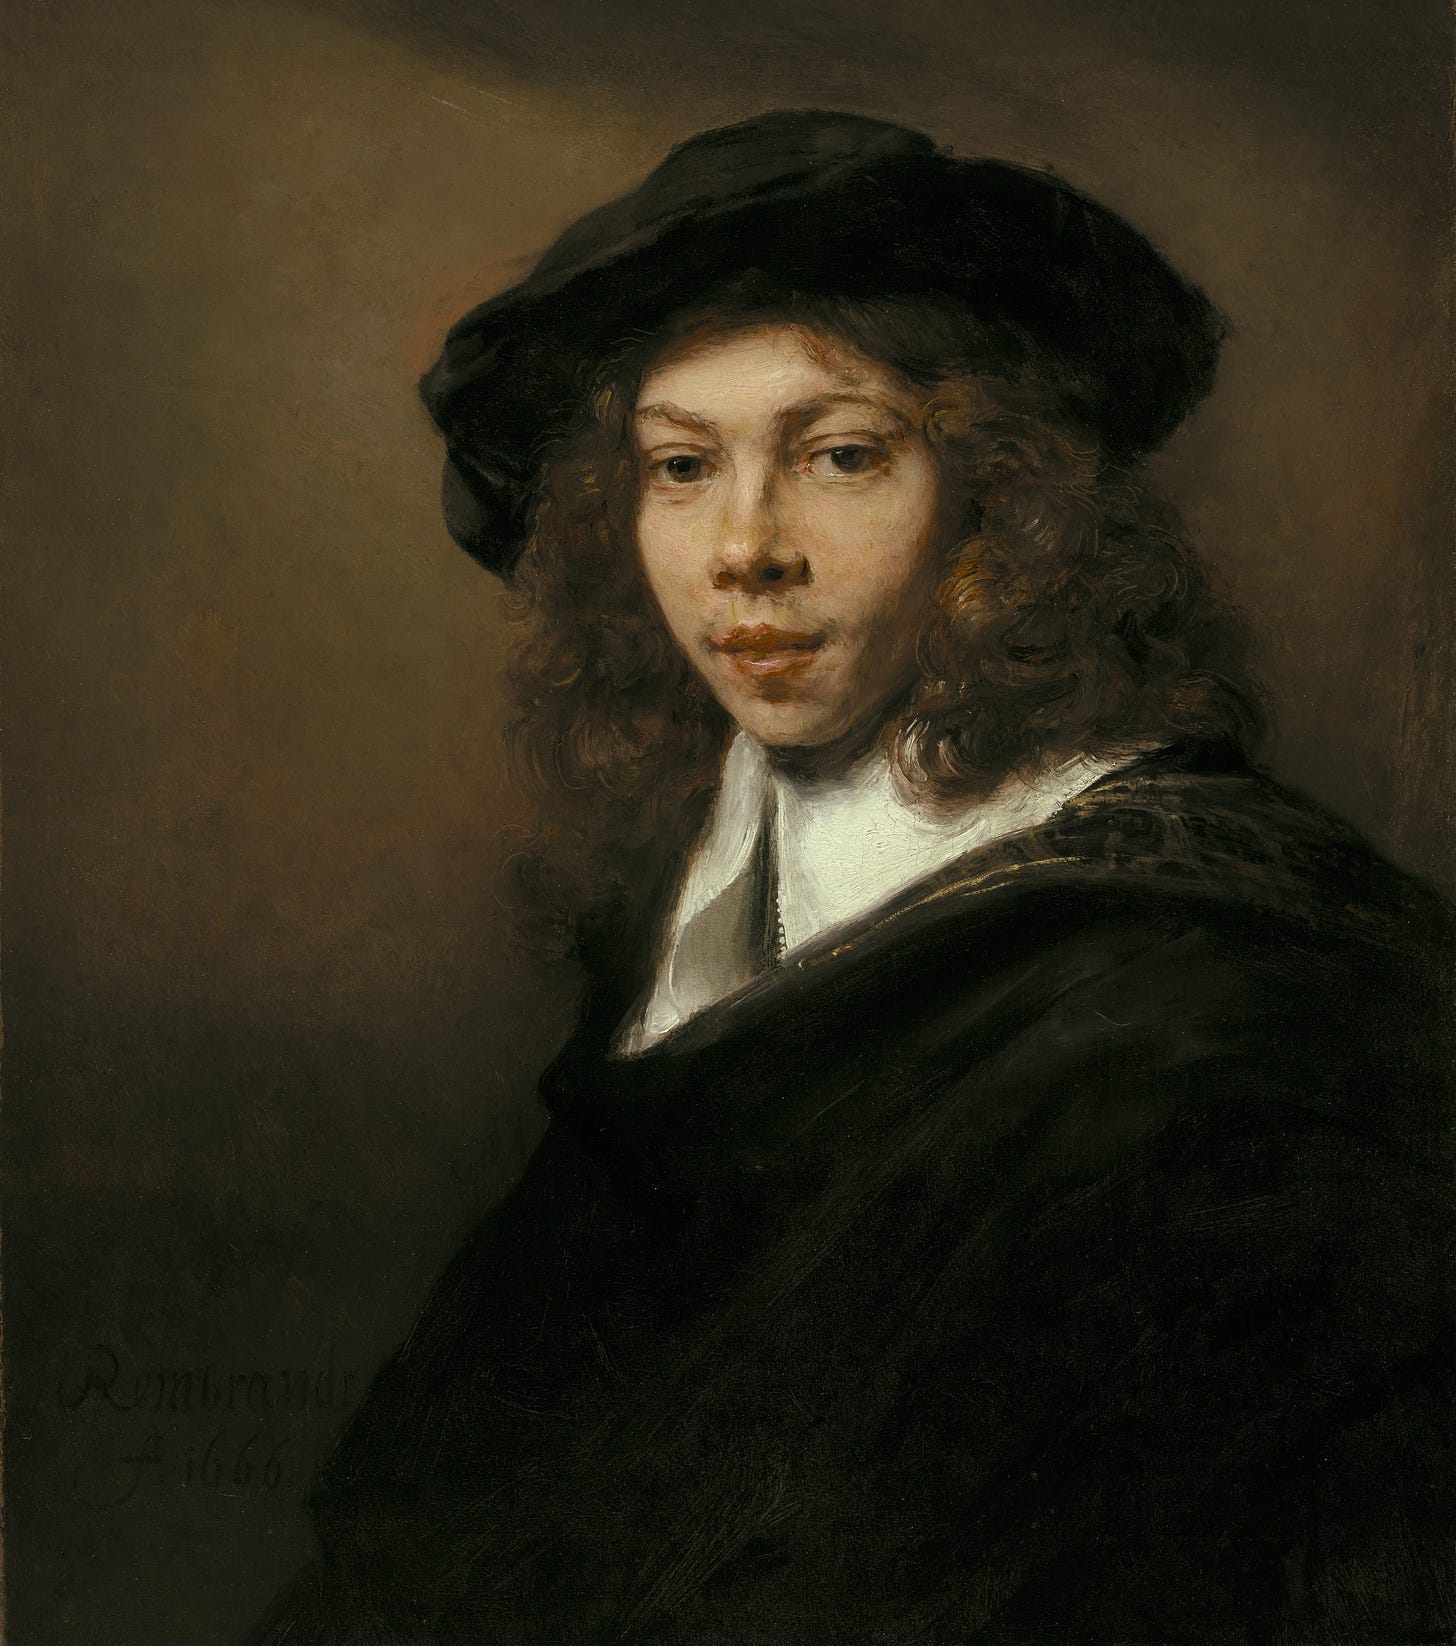 Young Man in a Black Beret by Rembrandt van Rijn